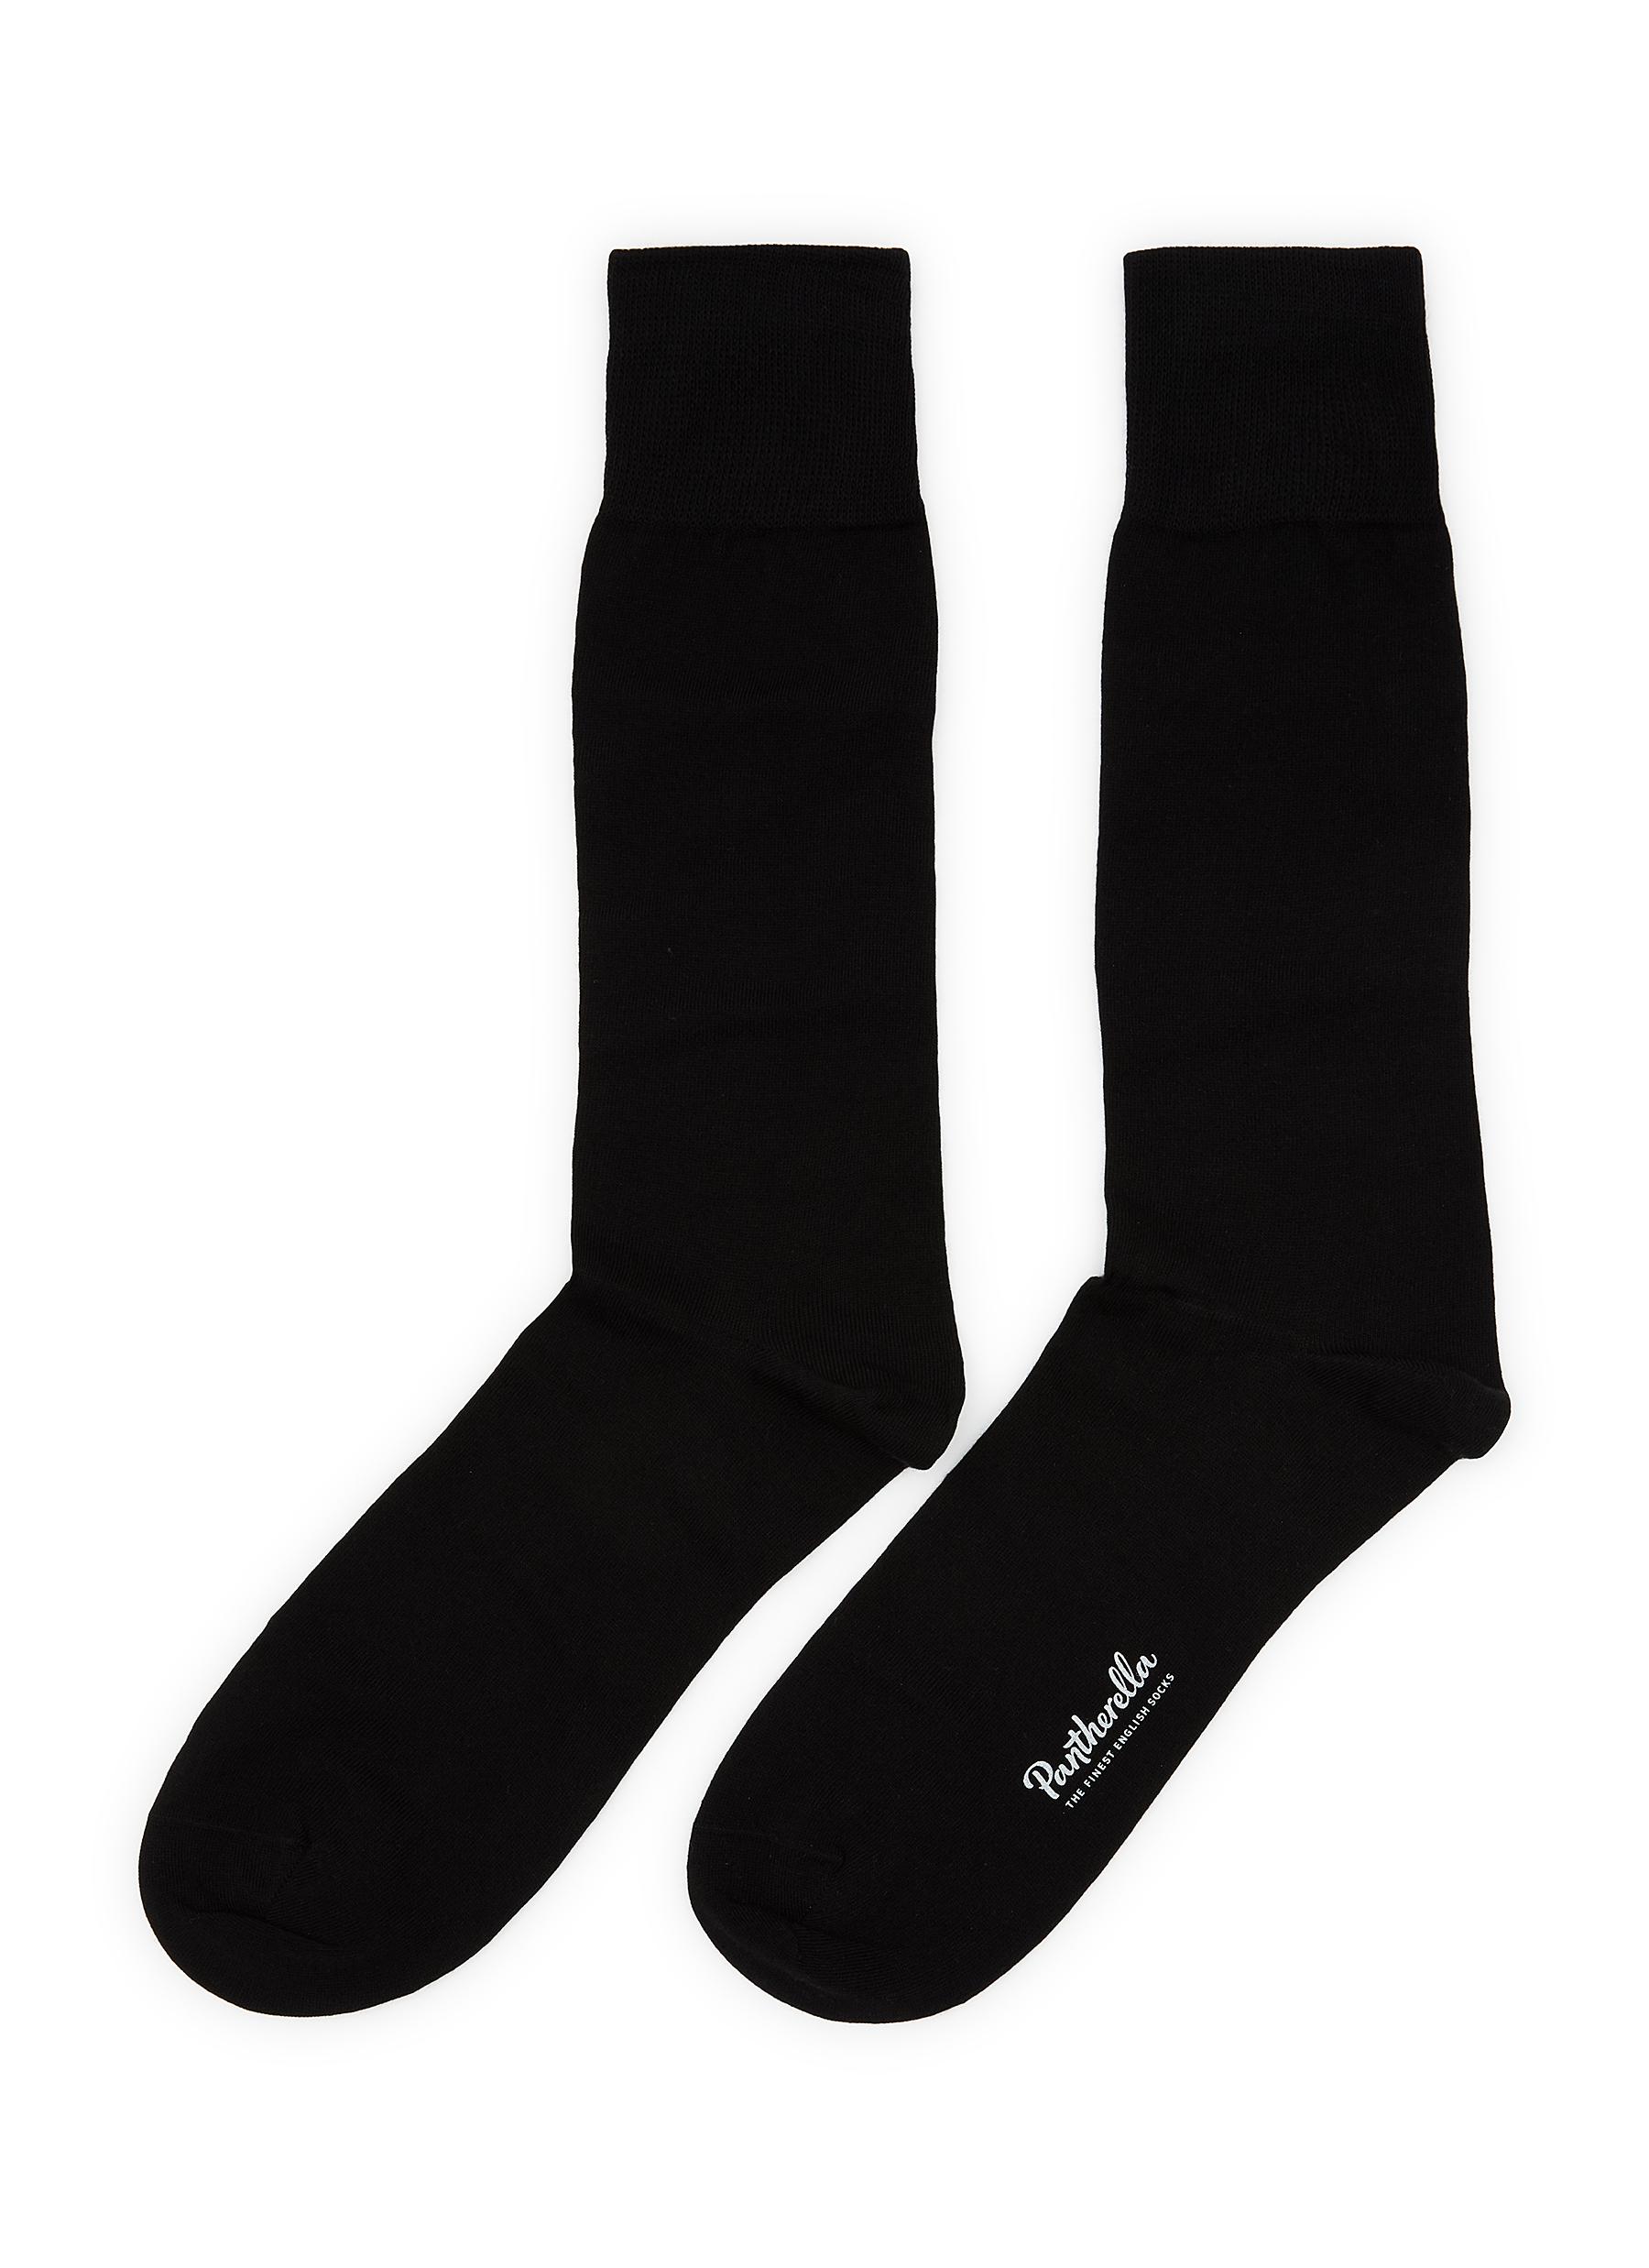 Tavener Cotton Long Ankle Socks